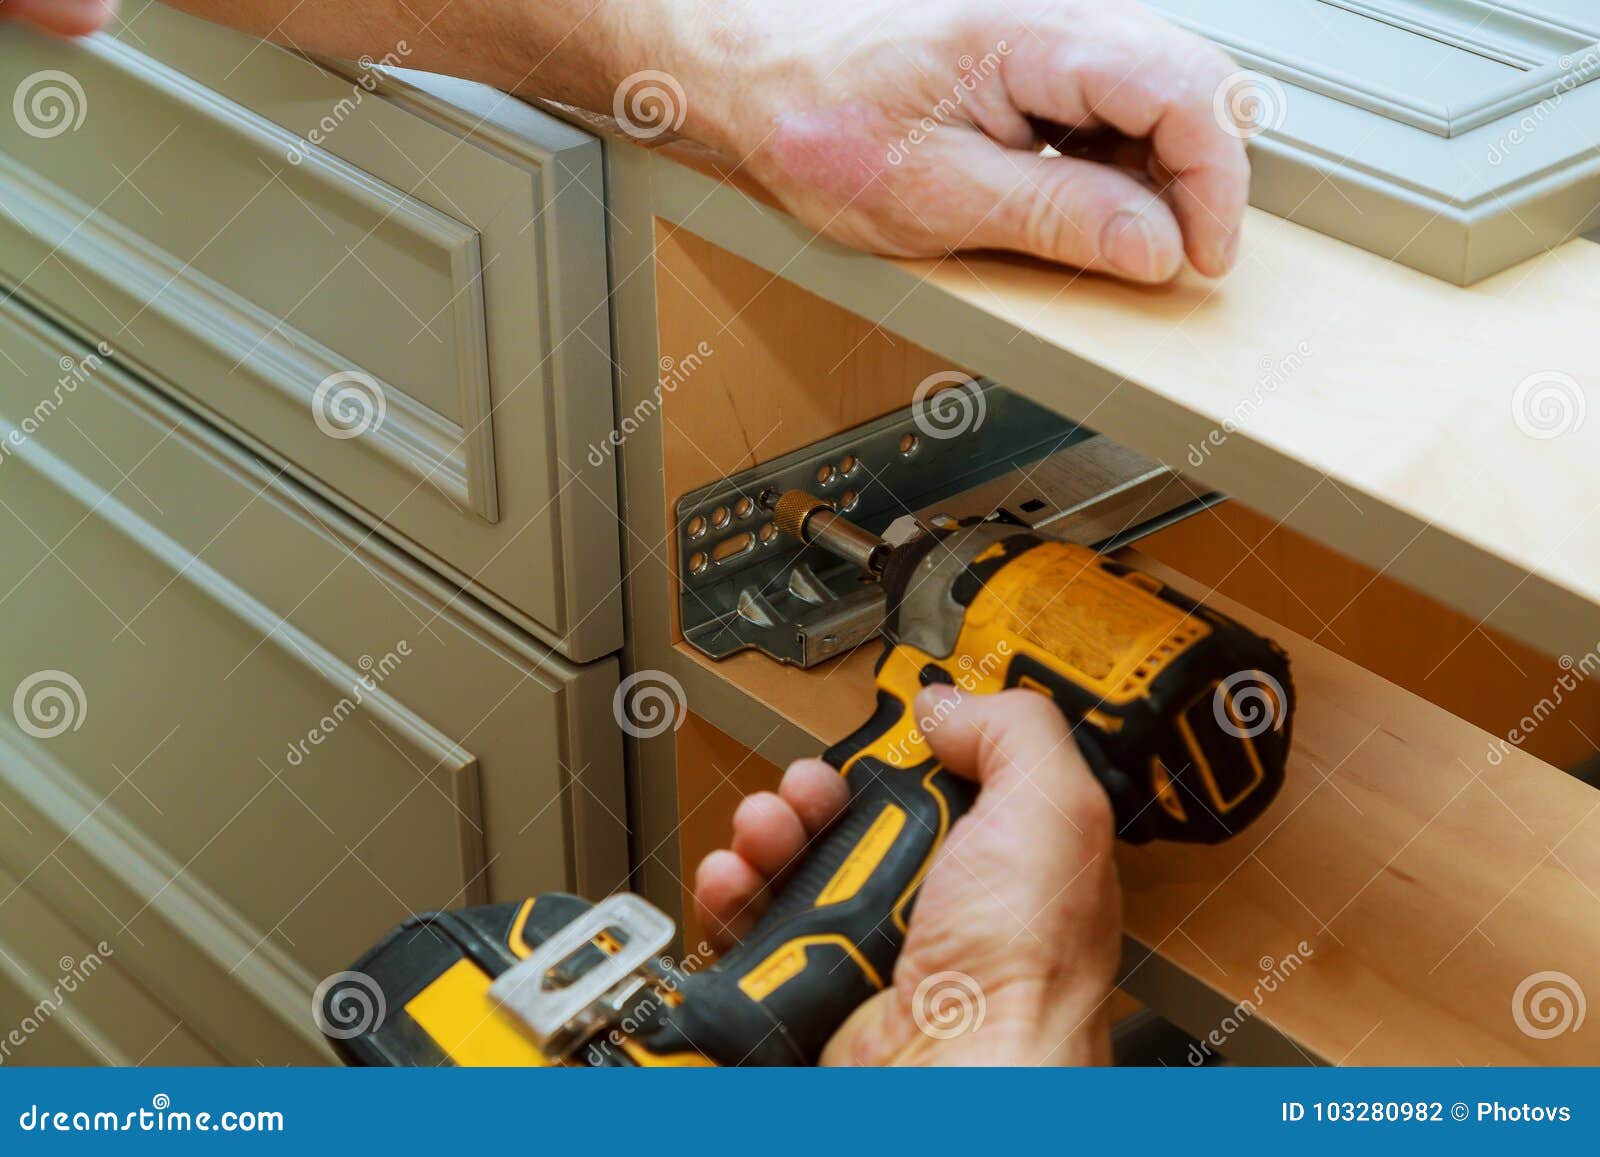 Adjusting Fixing Cabinet Door Hinge Stock Photo Image Of